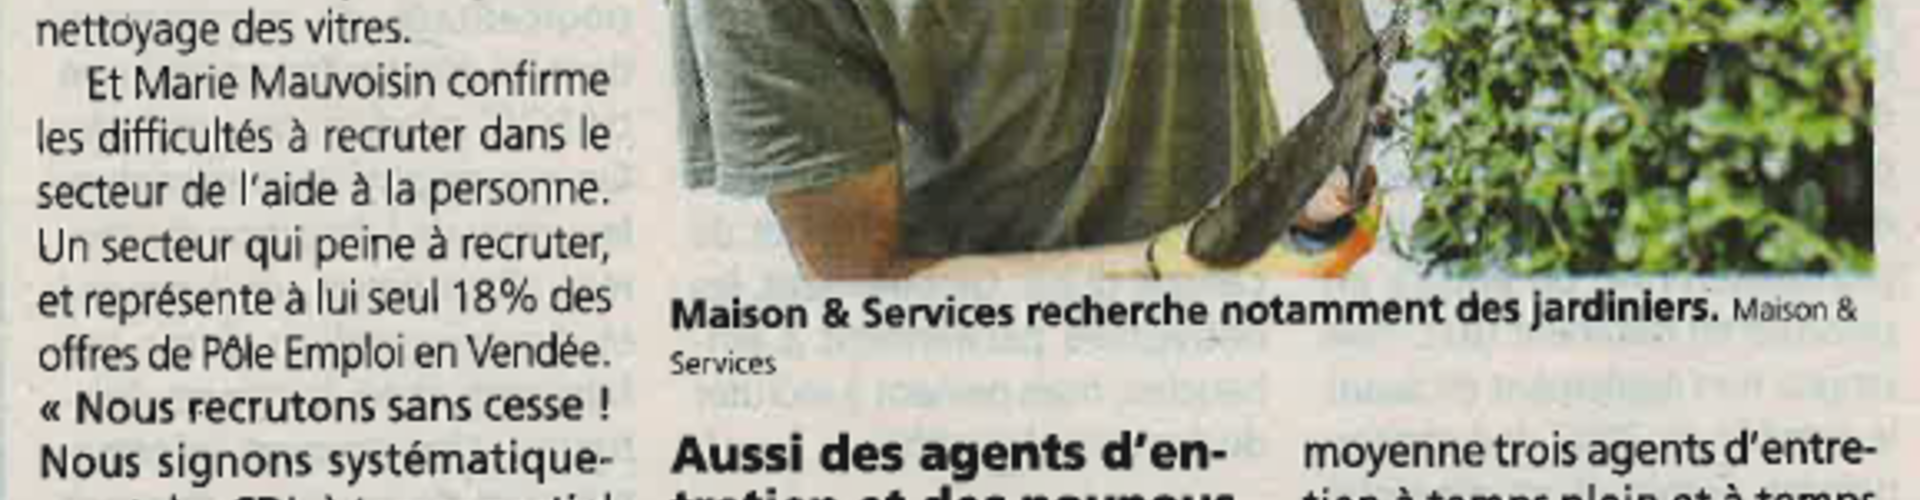 Actualité - Maison et Services Challans dans le Courrier Vendéen